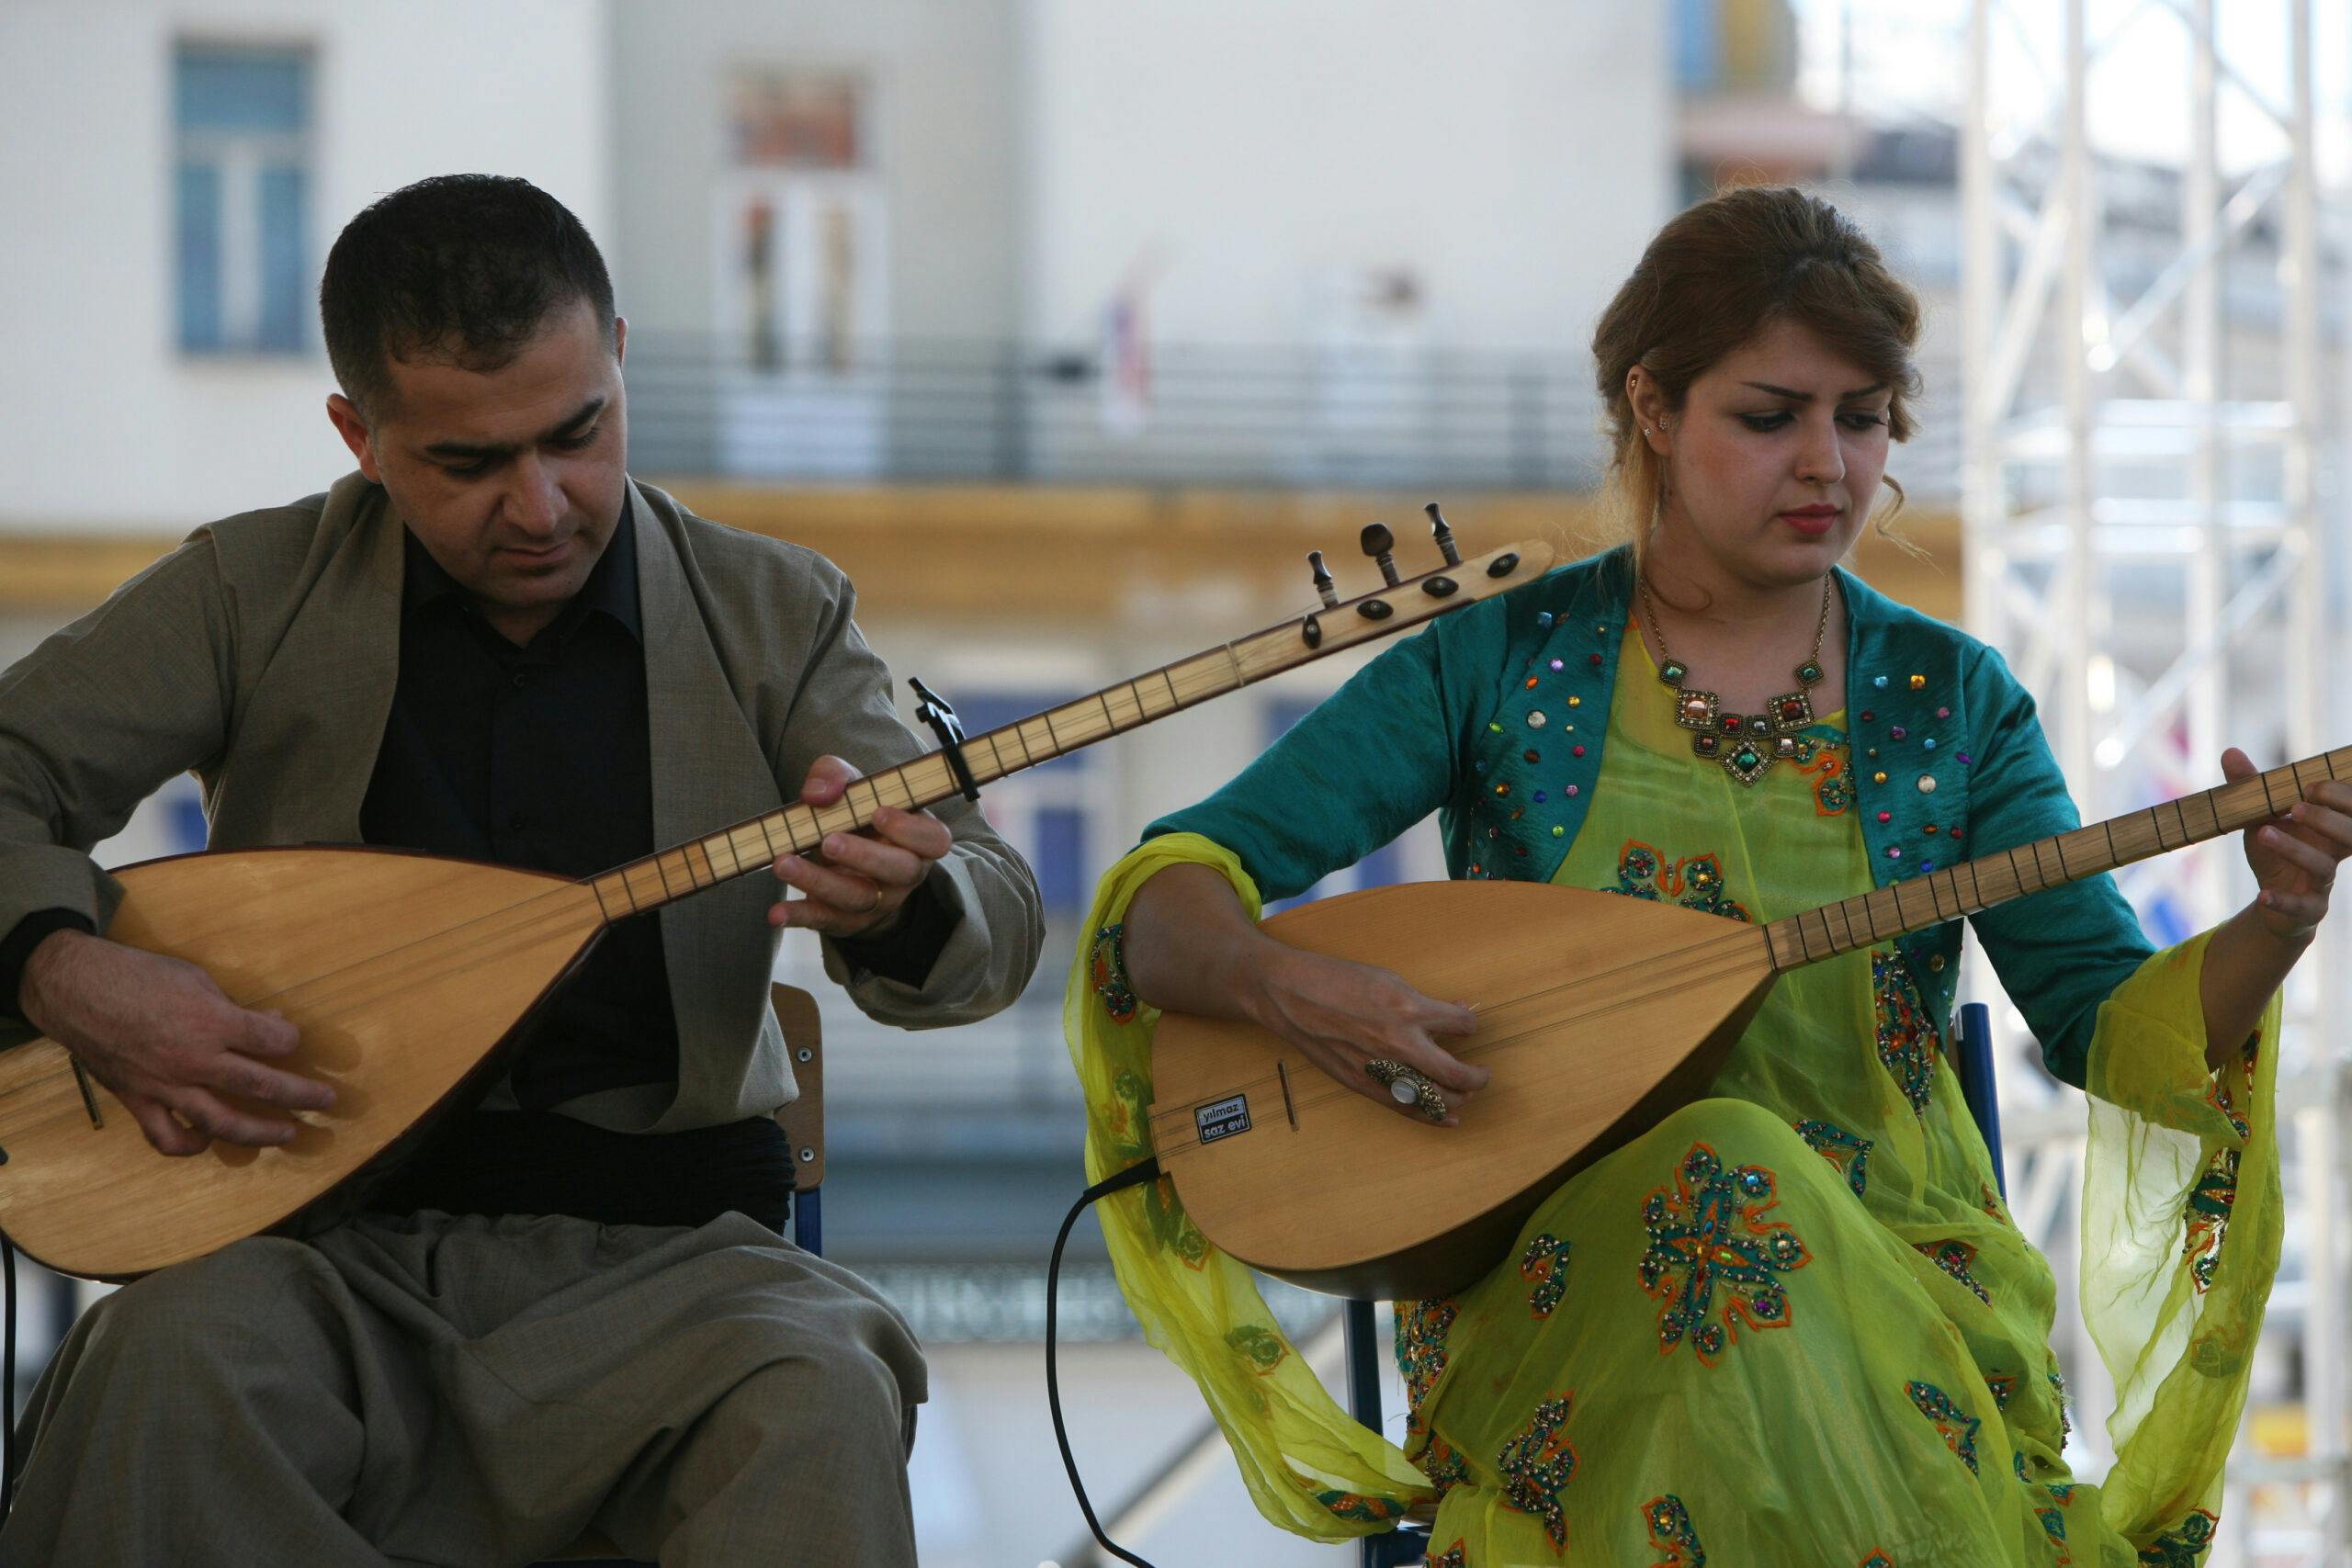 ملت کرد از قدیمی‌ترین ملت‌های خاورمیانه‌اند و موسیقی کردی هم بیانگر تاریخ، رسومات و باورهای این مردم است. (عکس: شاتراستاک)